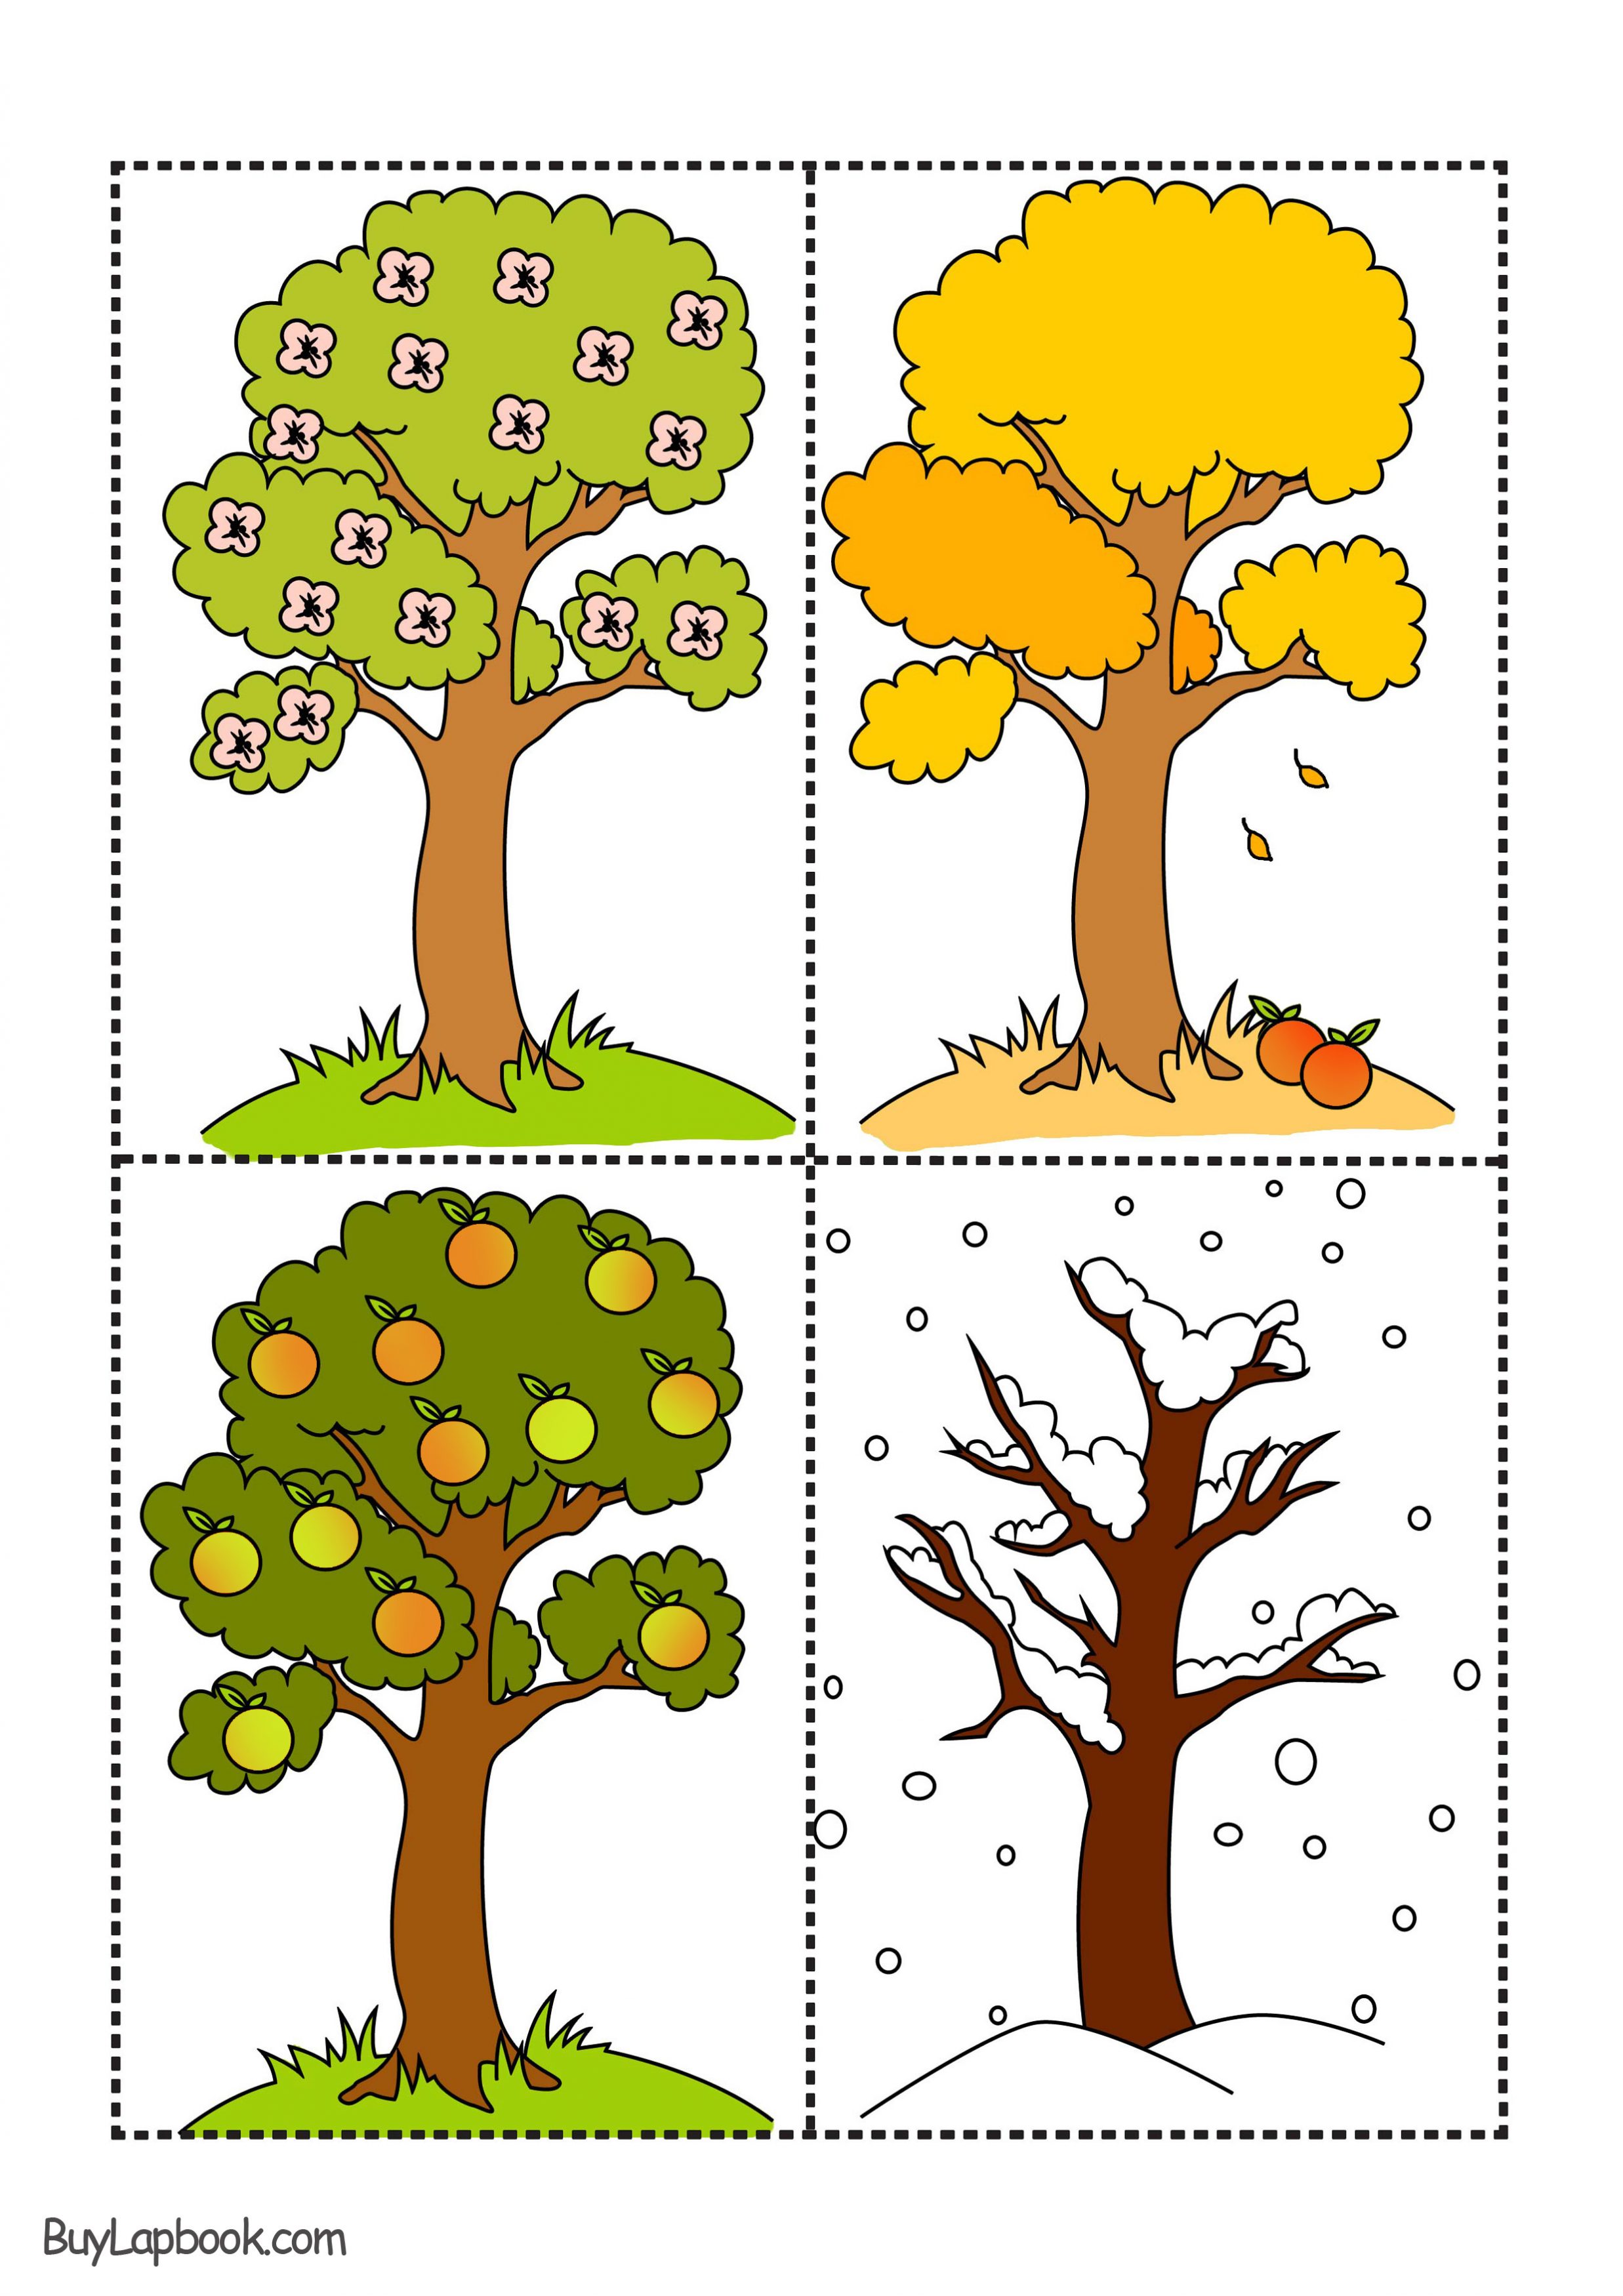 Apple Tree At Four Seasons